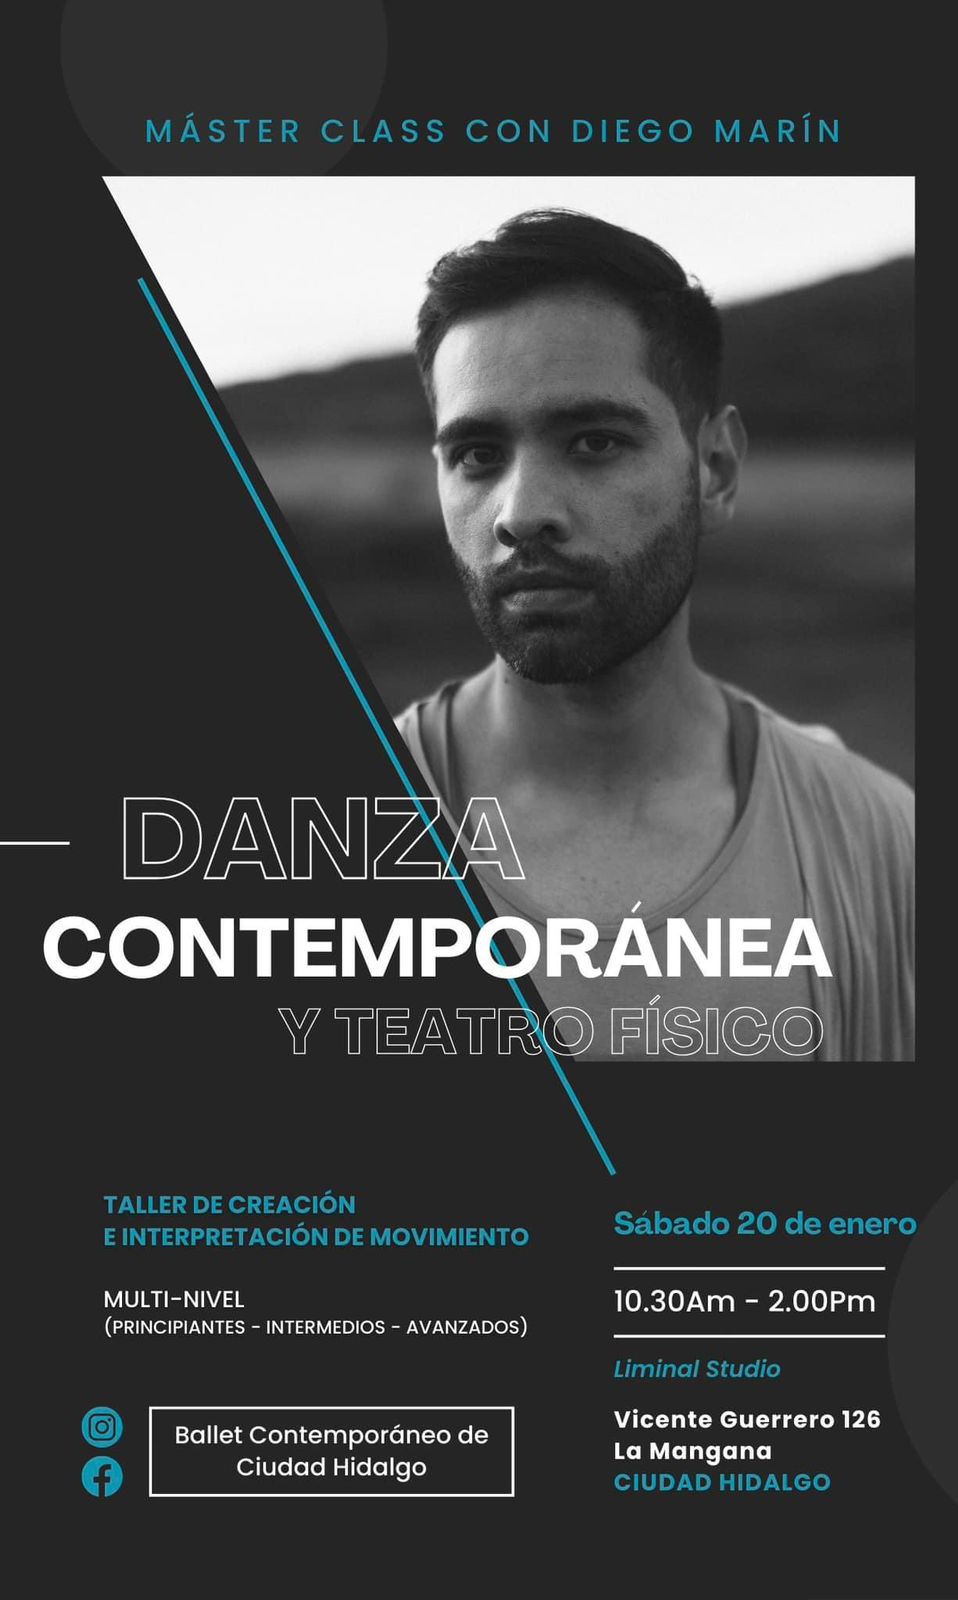 El artista Diego Marín ofrecerá clase magistral sobre Danza Contemporánea y Teatro Físico